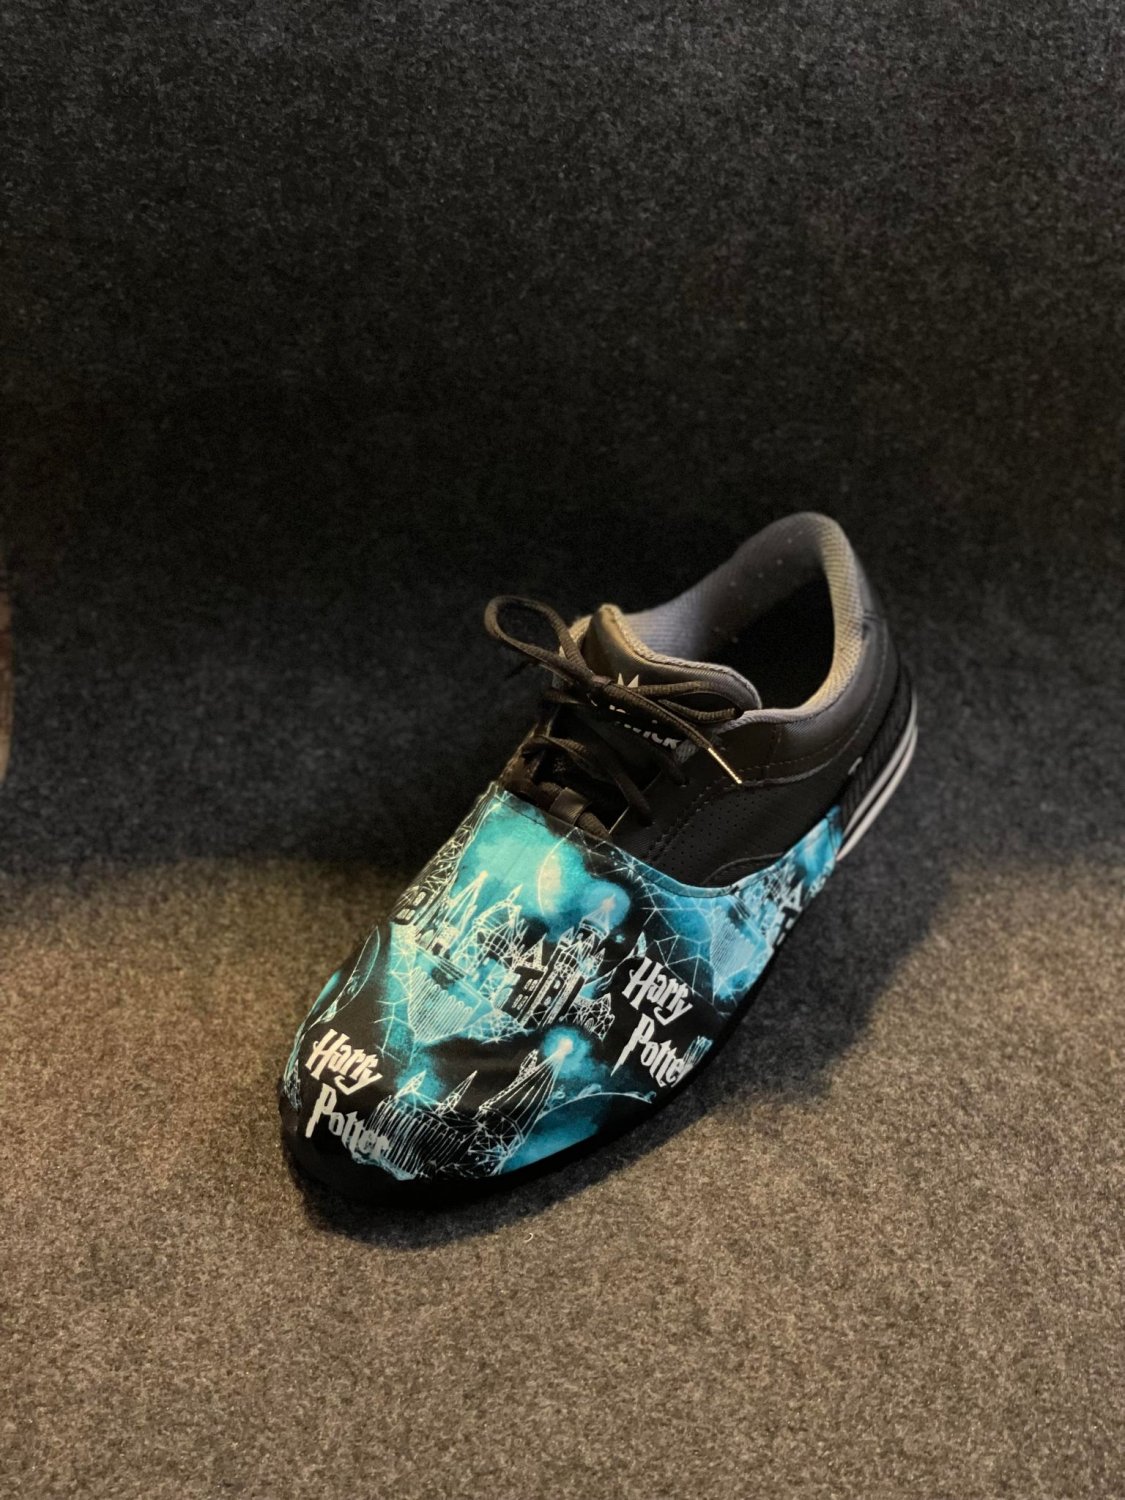 Bowling Shoe Slider - HarryPotter blue